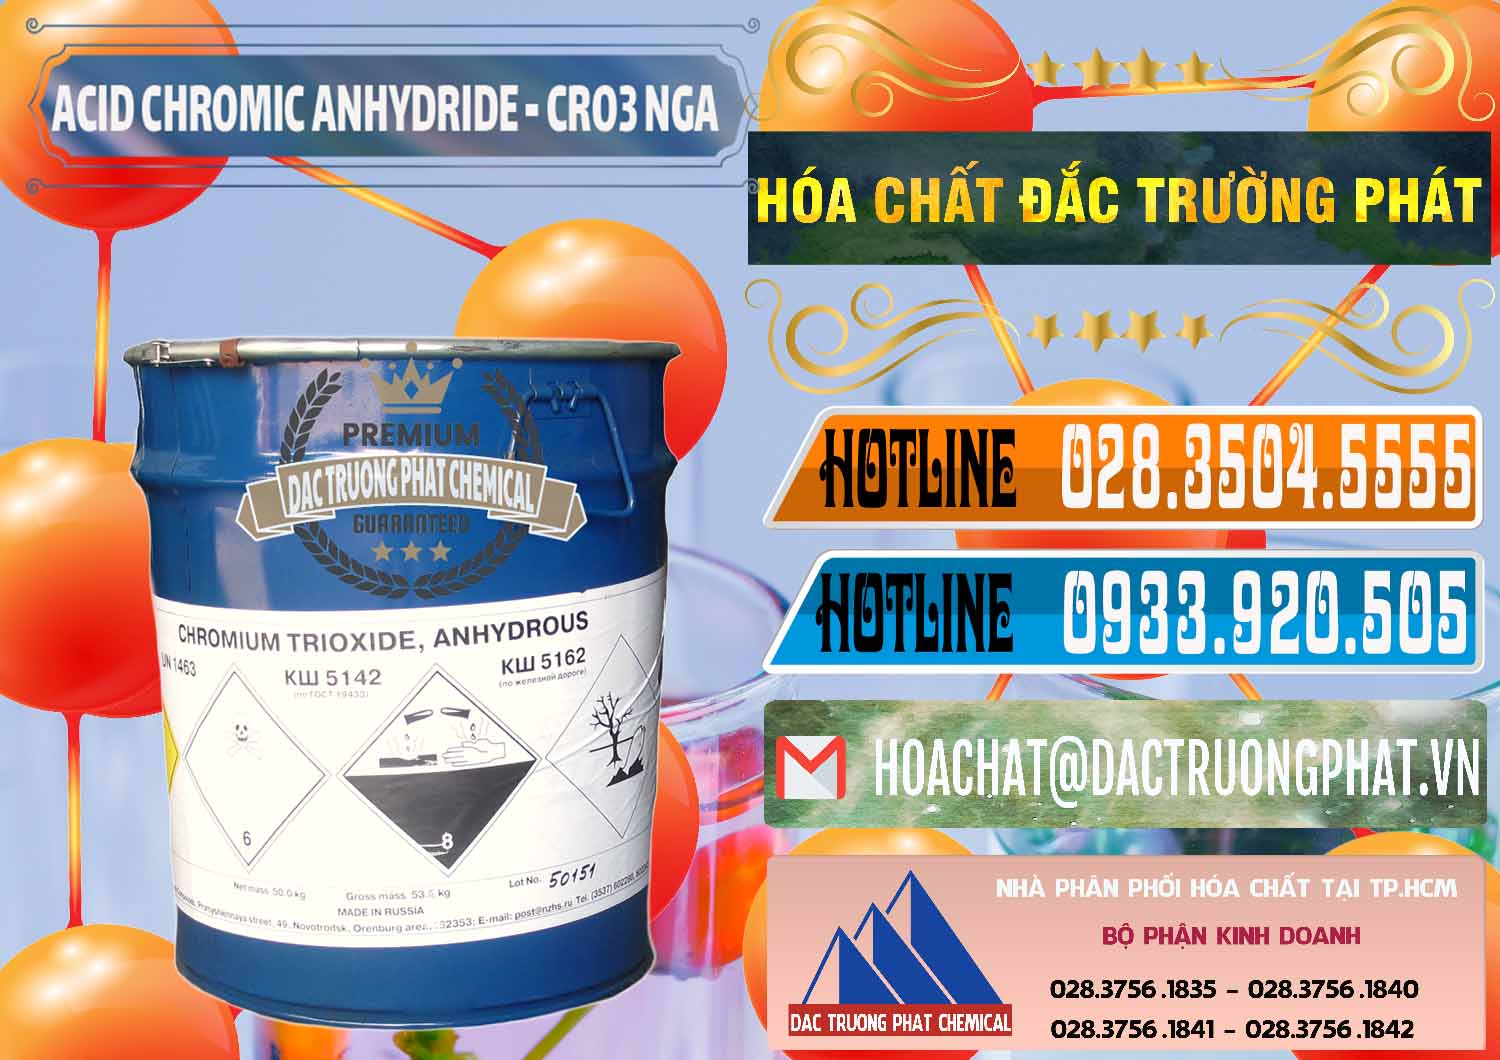 Nhà phân phối & bán Acid Chromic Anhydride - Cromic CRO3 Nga Russia - 0006 - Nơi phân phối & bán hóa chất tại TP.HCM - stmp.net